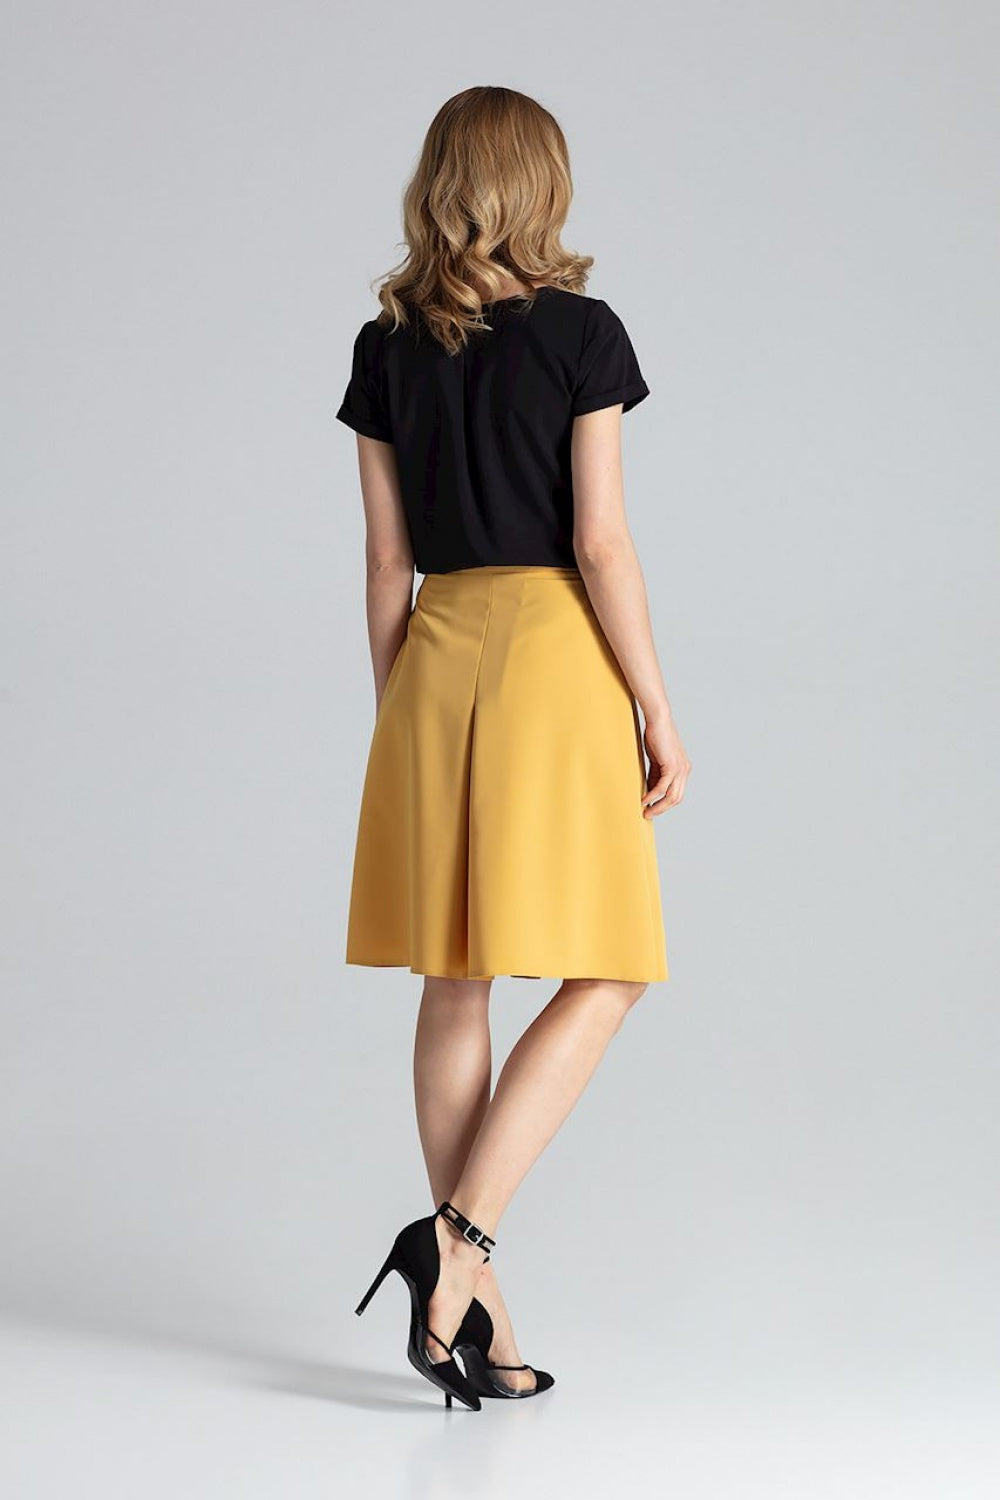 Skirt model 132468 Figl